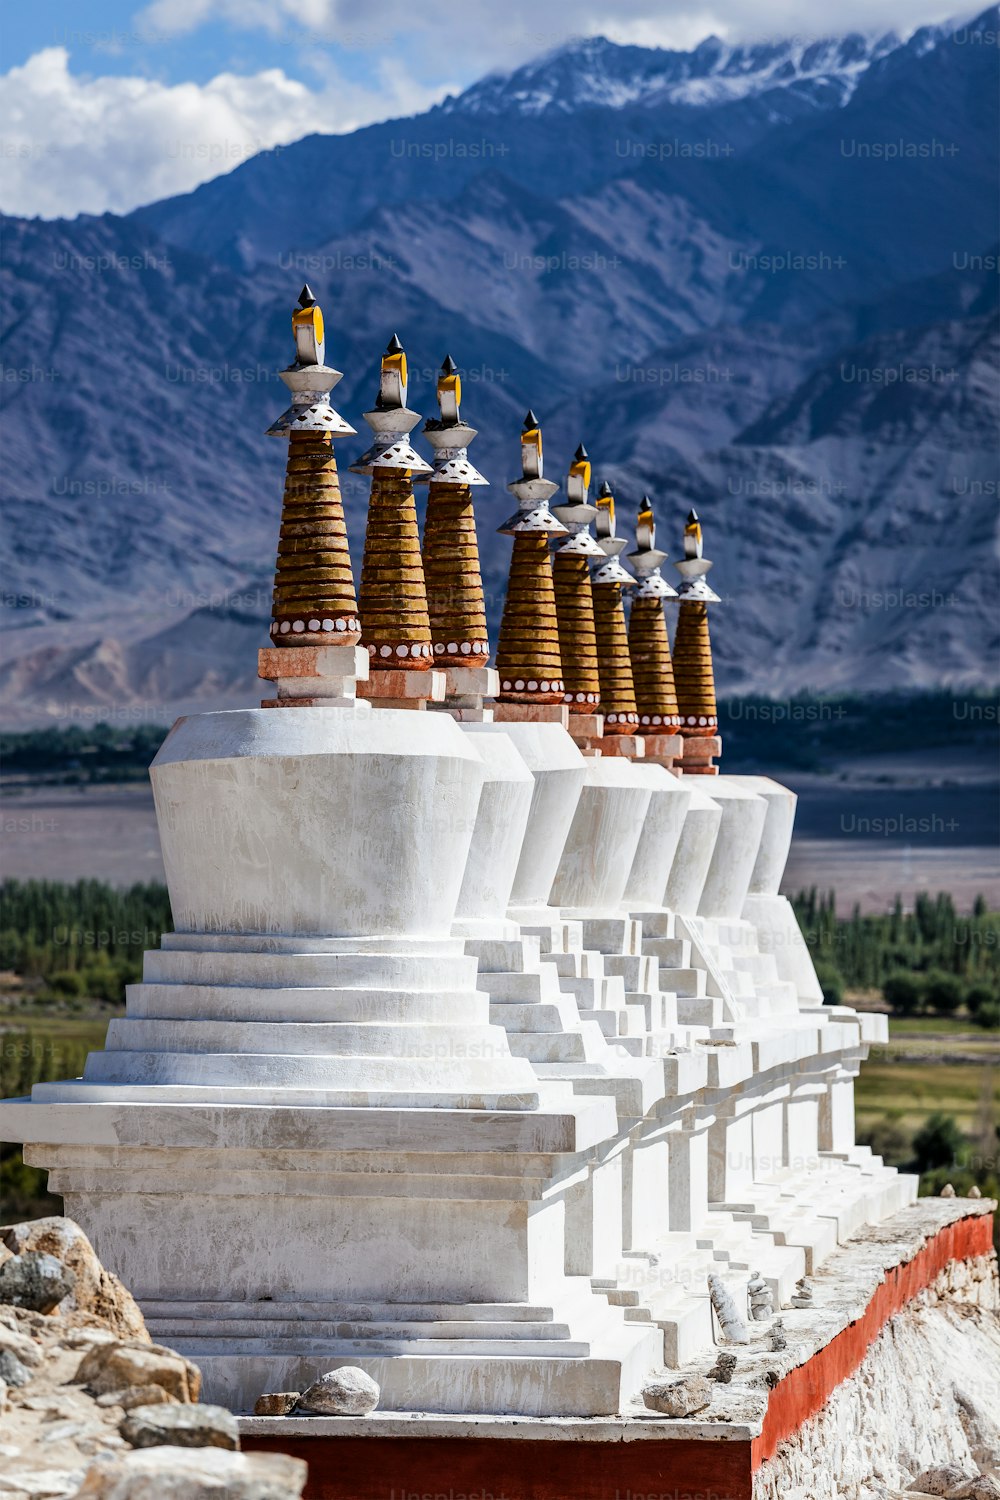 Chorten (stupa buddisti) all'esterno del palazzo Shey in Himalaya. Leh, Ladakh, India